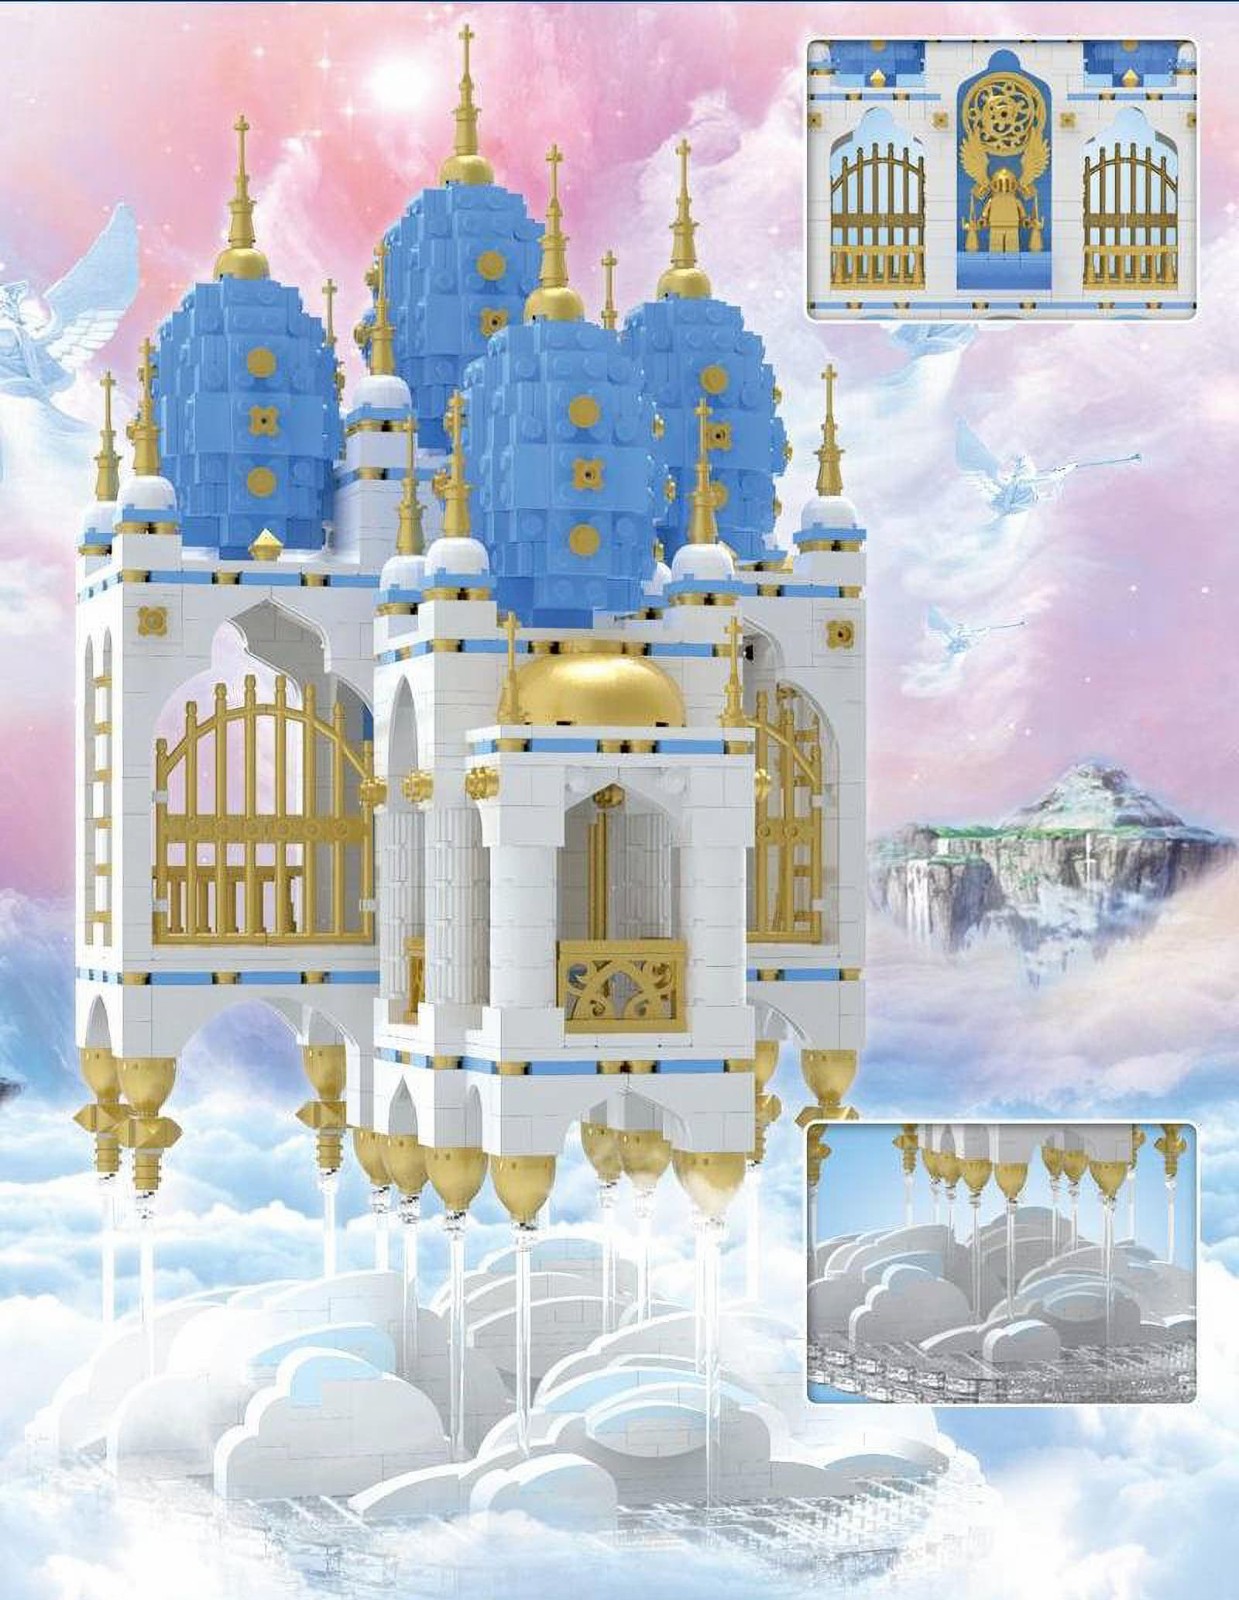 Конструктор Mould King «Небесный замок» 16015 (Creator Expert) / 2866 деталей